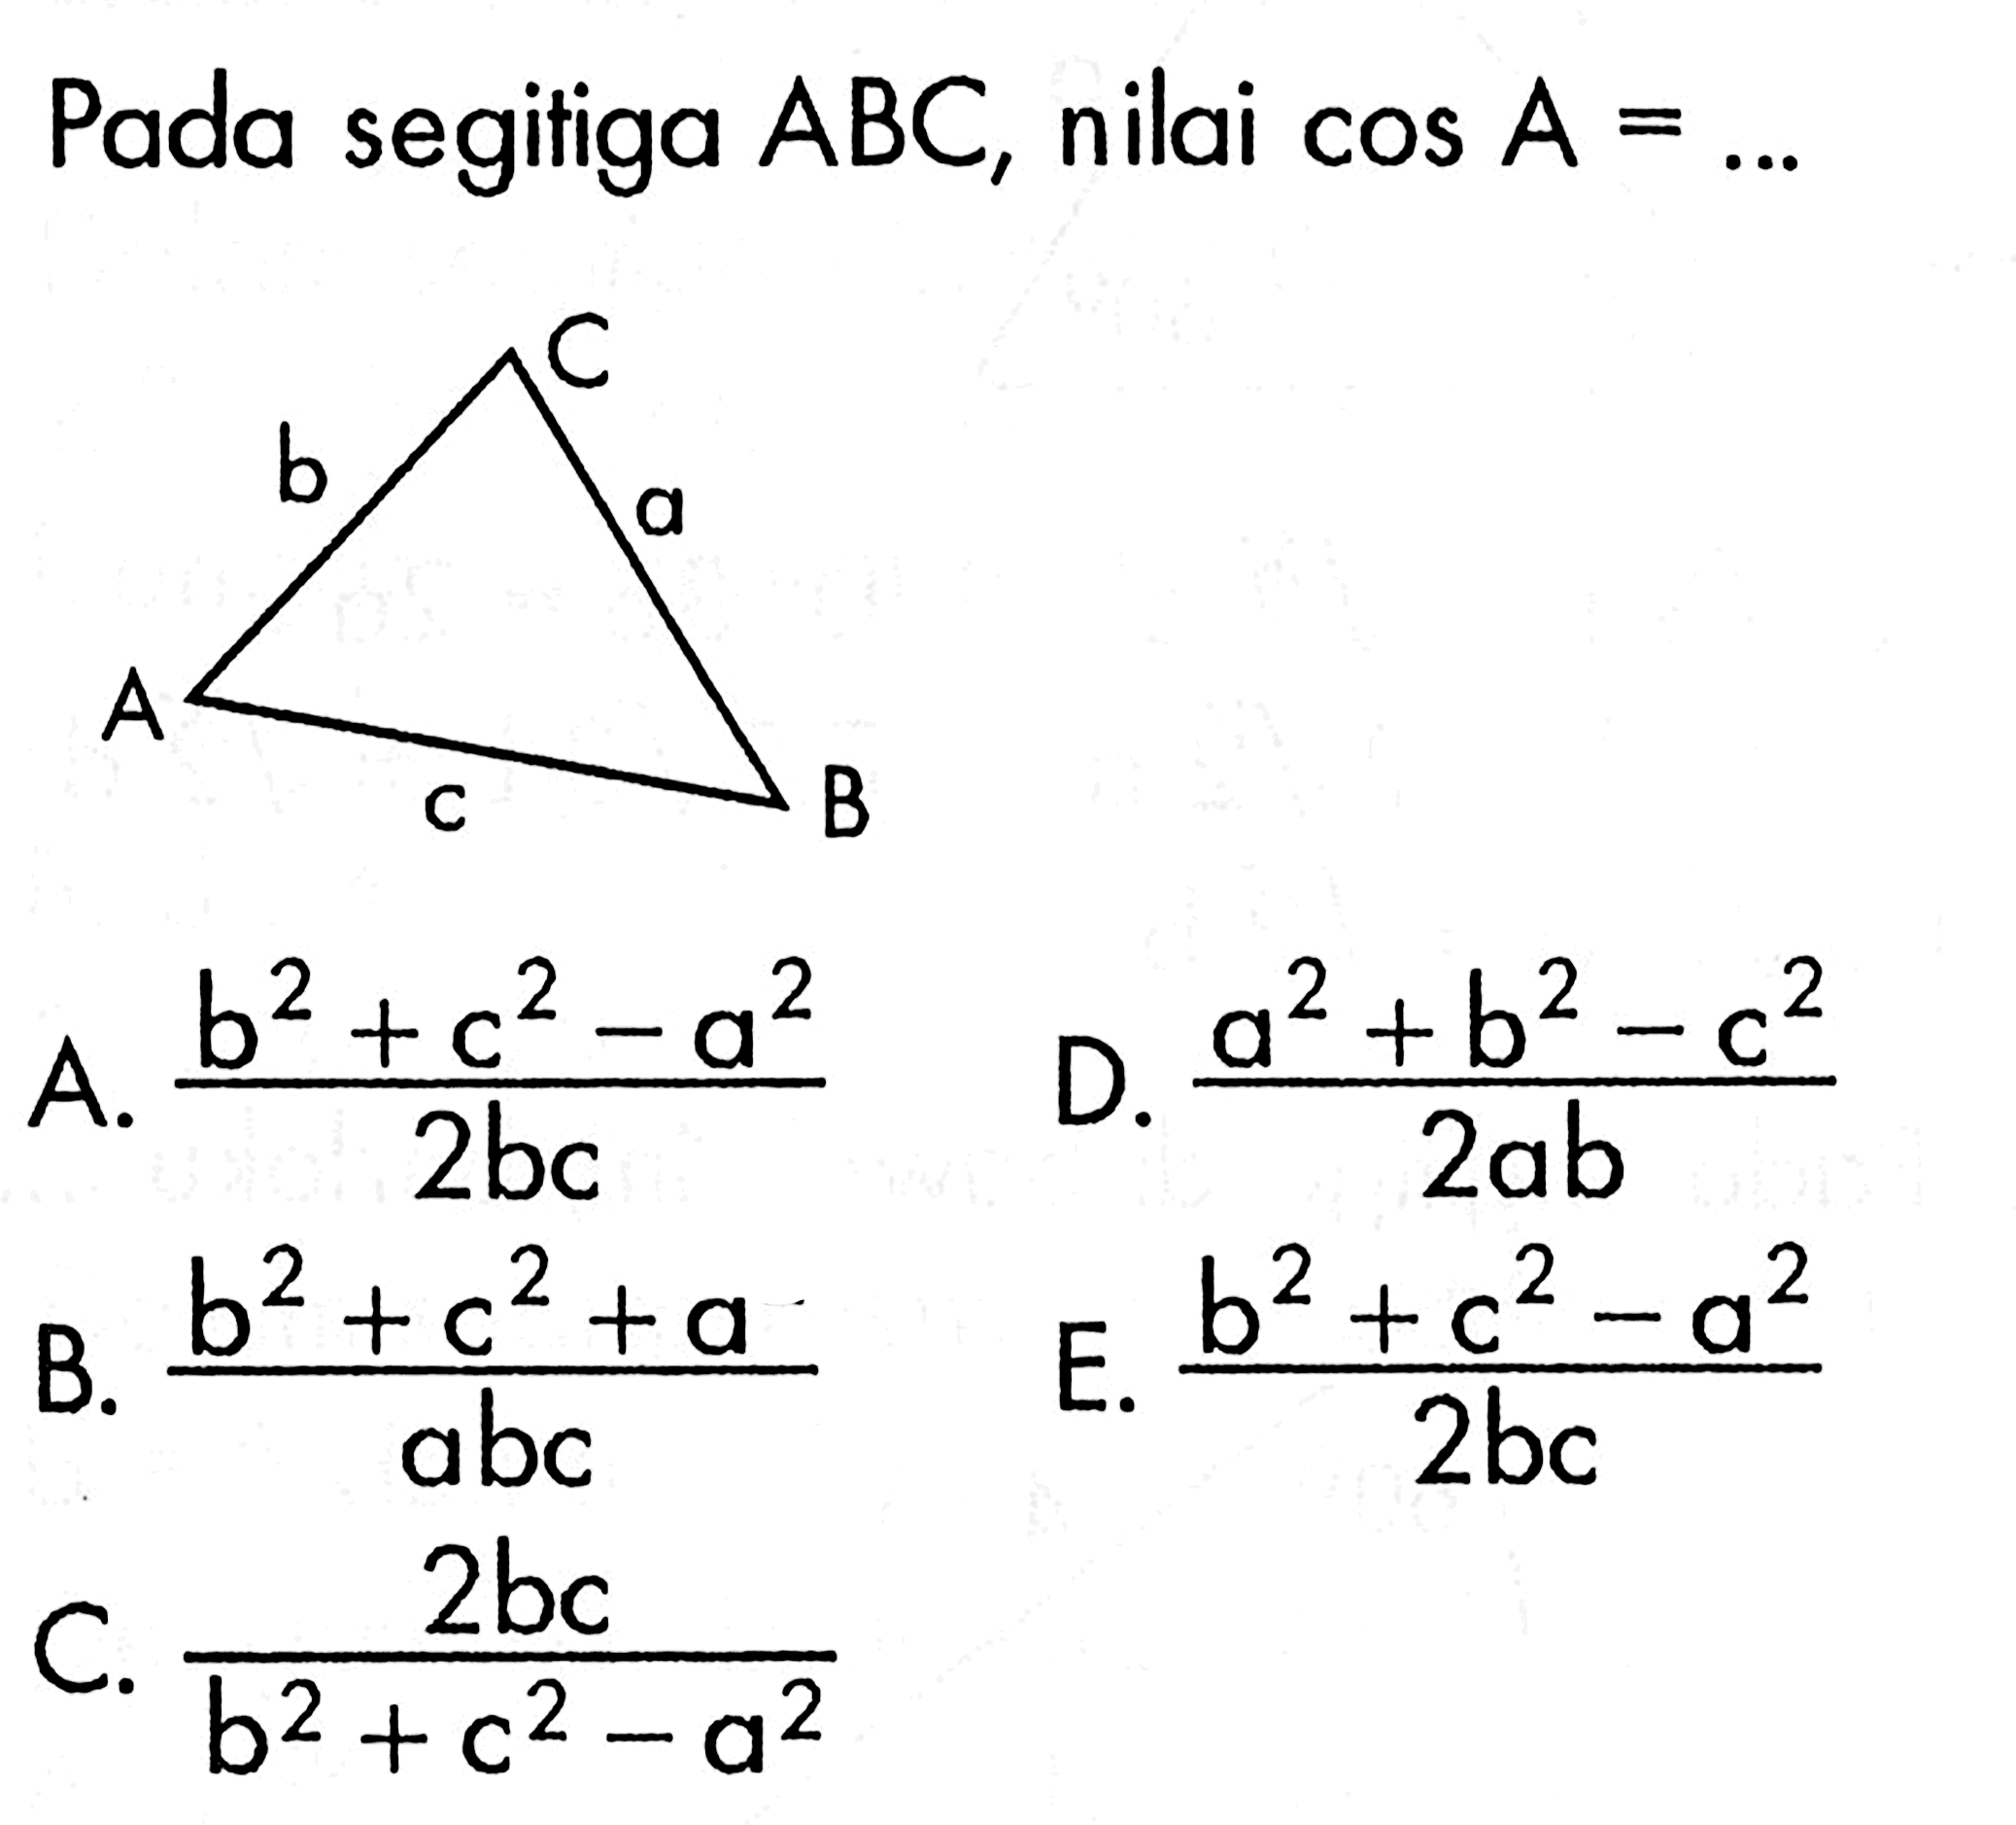 Pada segitiga ABC, nilai cos A= ..... A. (b^2+c^2-a^2)/2bc D. (a^2+b^2-c^2)/2ab B. (b^2+c^2+a^2)/abc E. (b^2+c^2-a^2)/2bc C. 2bc/(b^2+c^2-a^2)